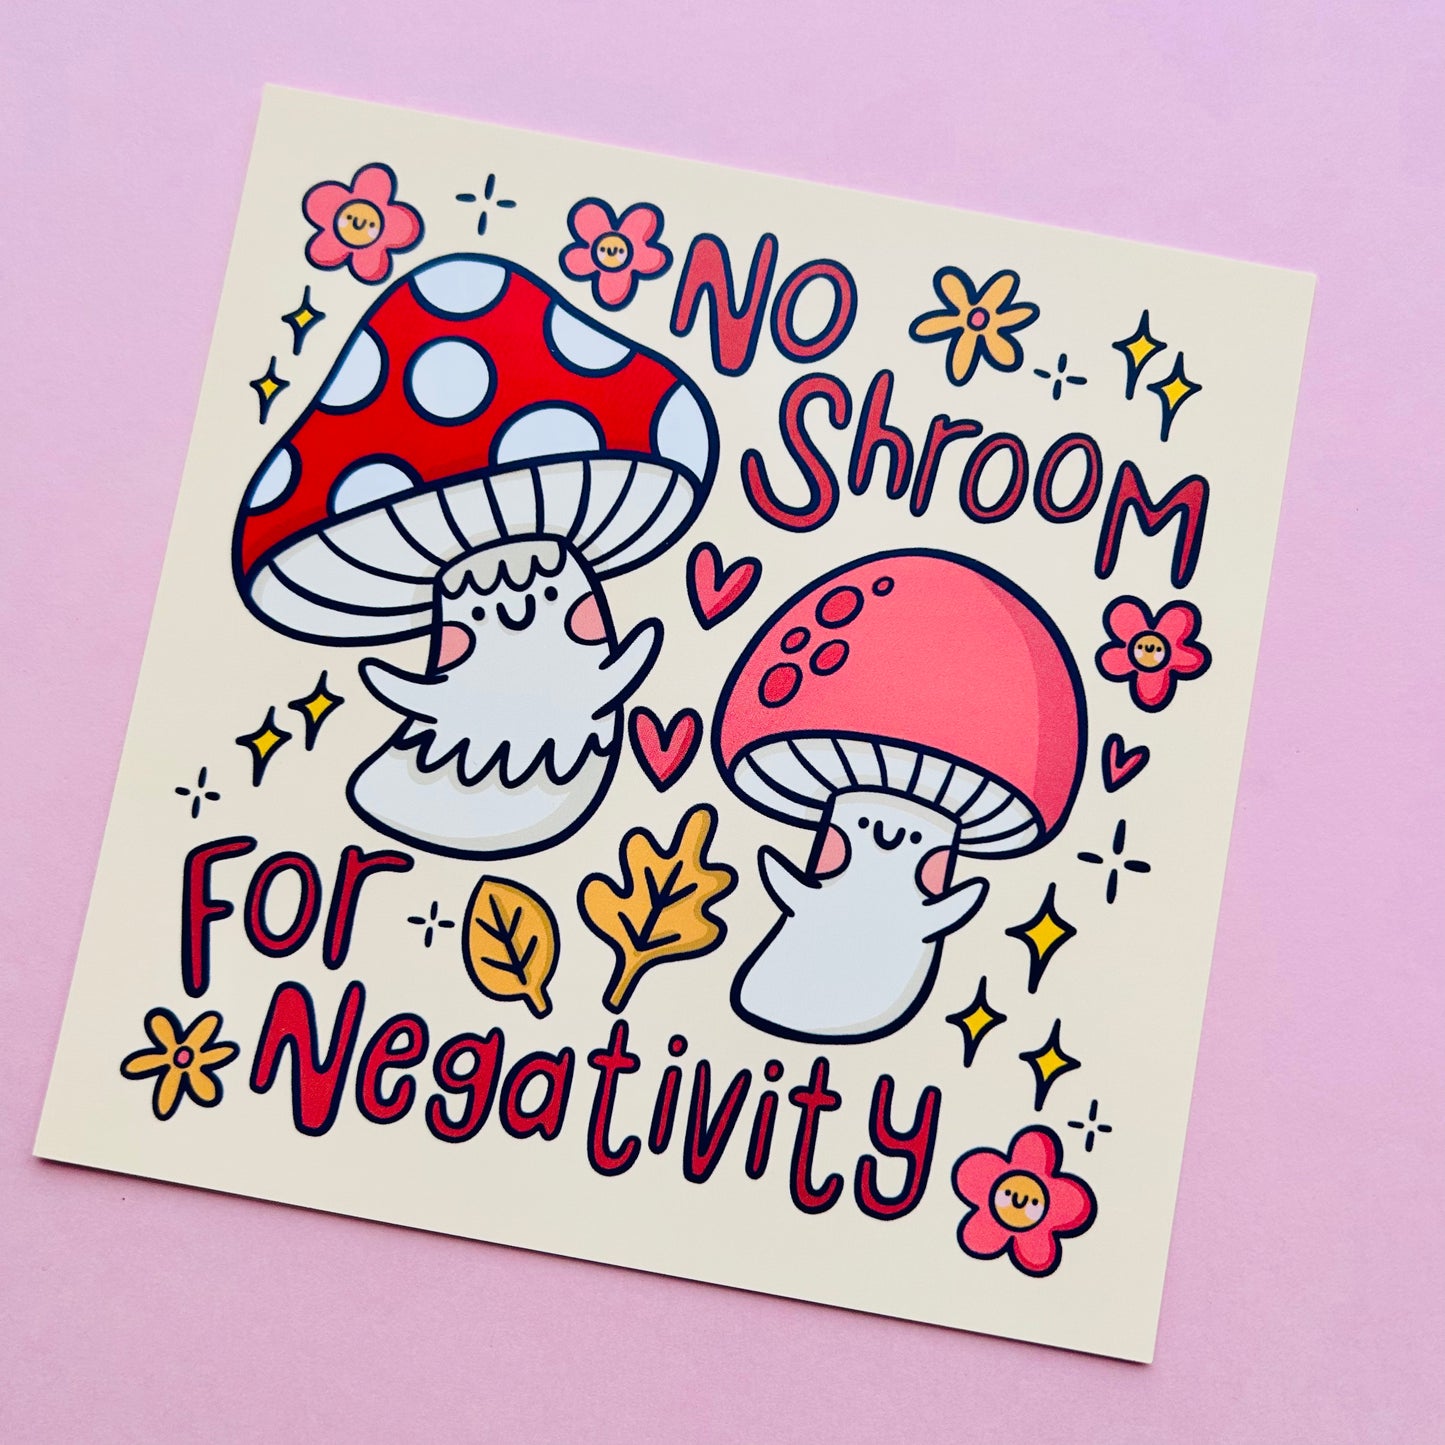 No Shroom For Negativity - Square Print